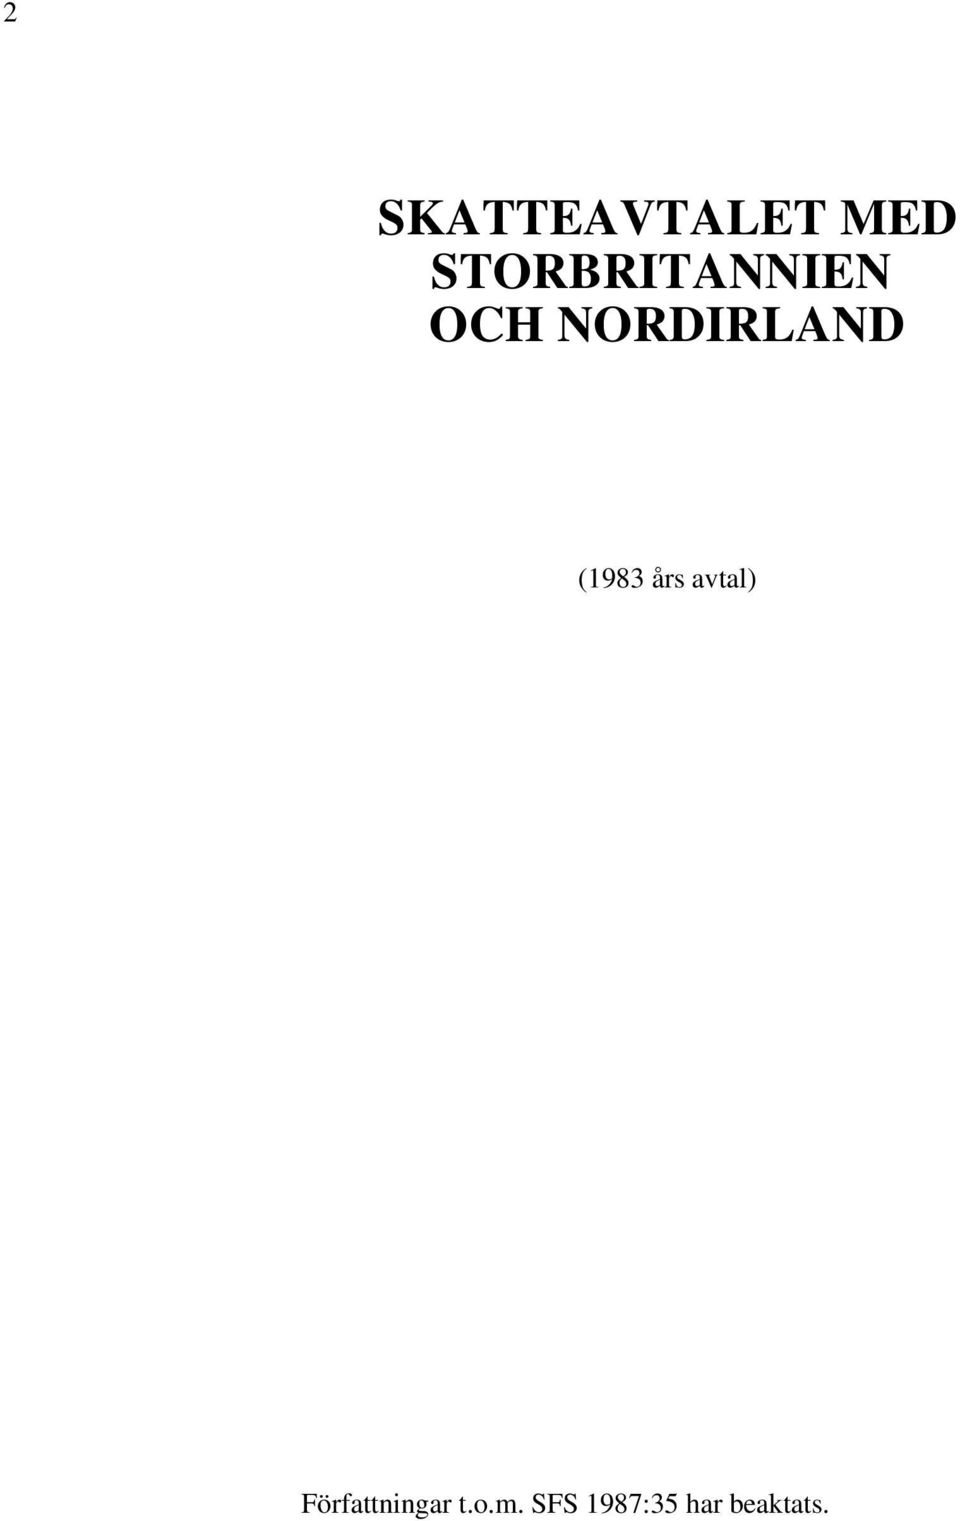 NORDIRLAND (1983 års avtal)